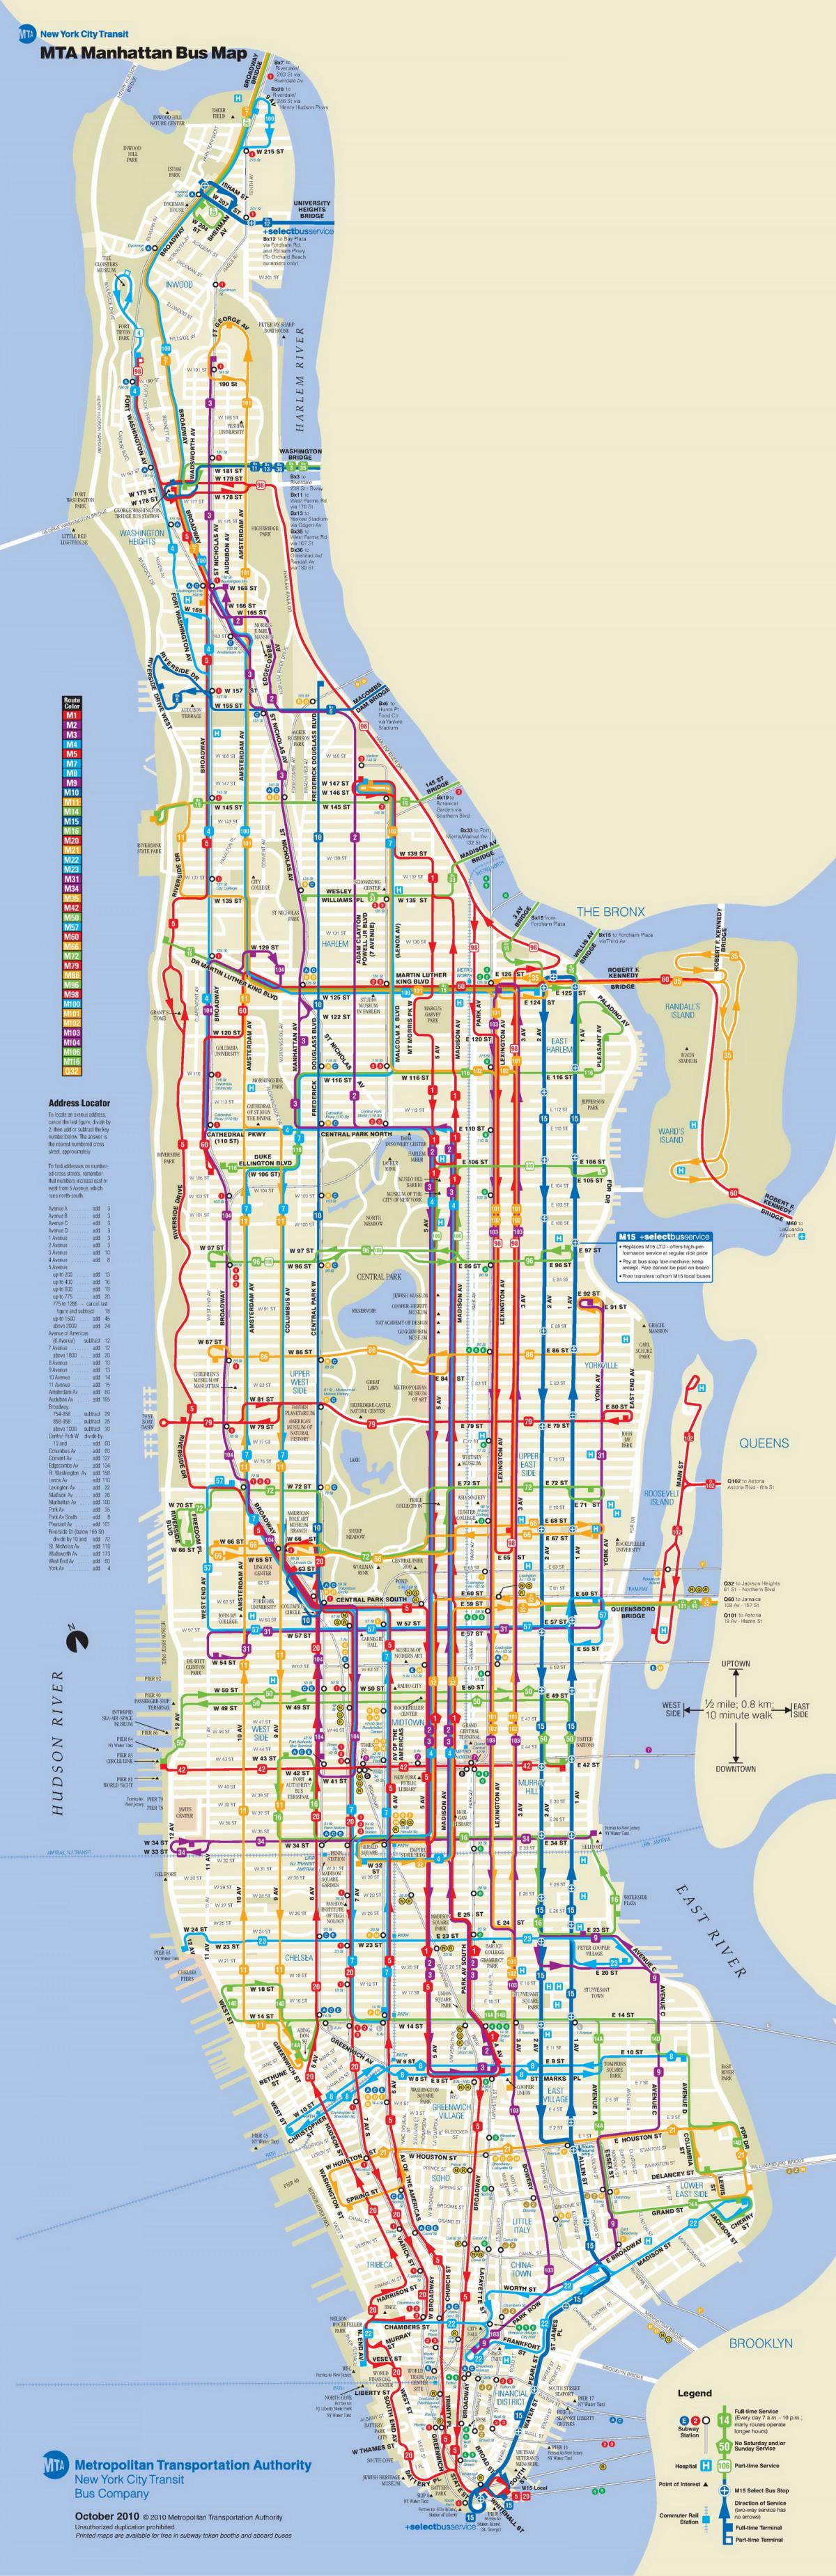 मैनहट्टन बस के नक्शे के साथ बंद हो जाता है